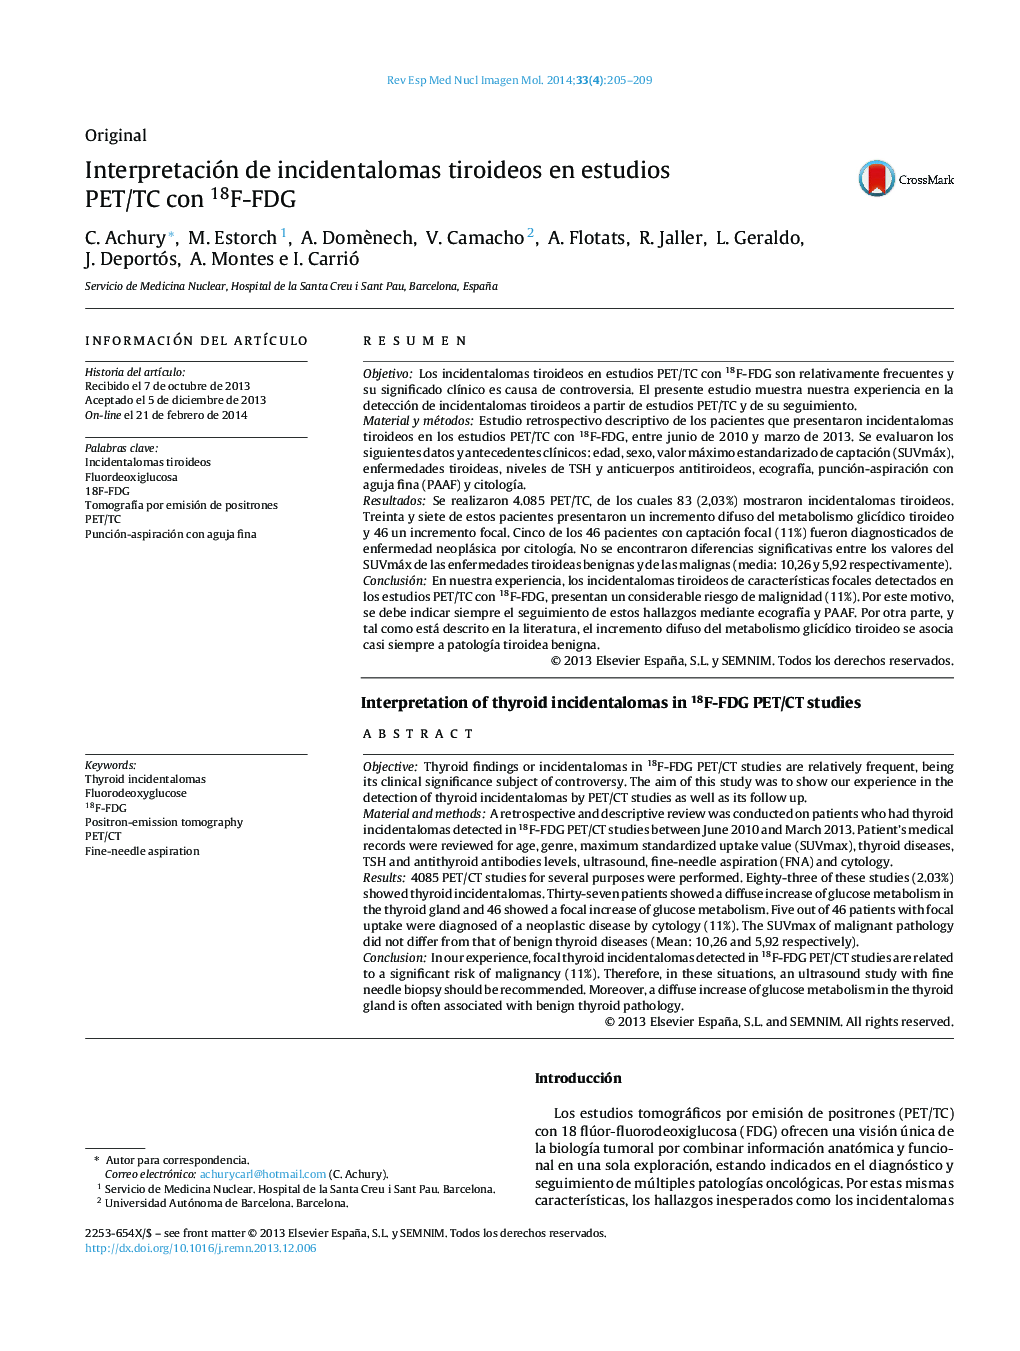 Interpretación de incidentalomas tiroideos en estudios PET/TC con 18F-FDG